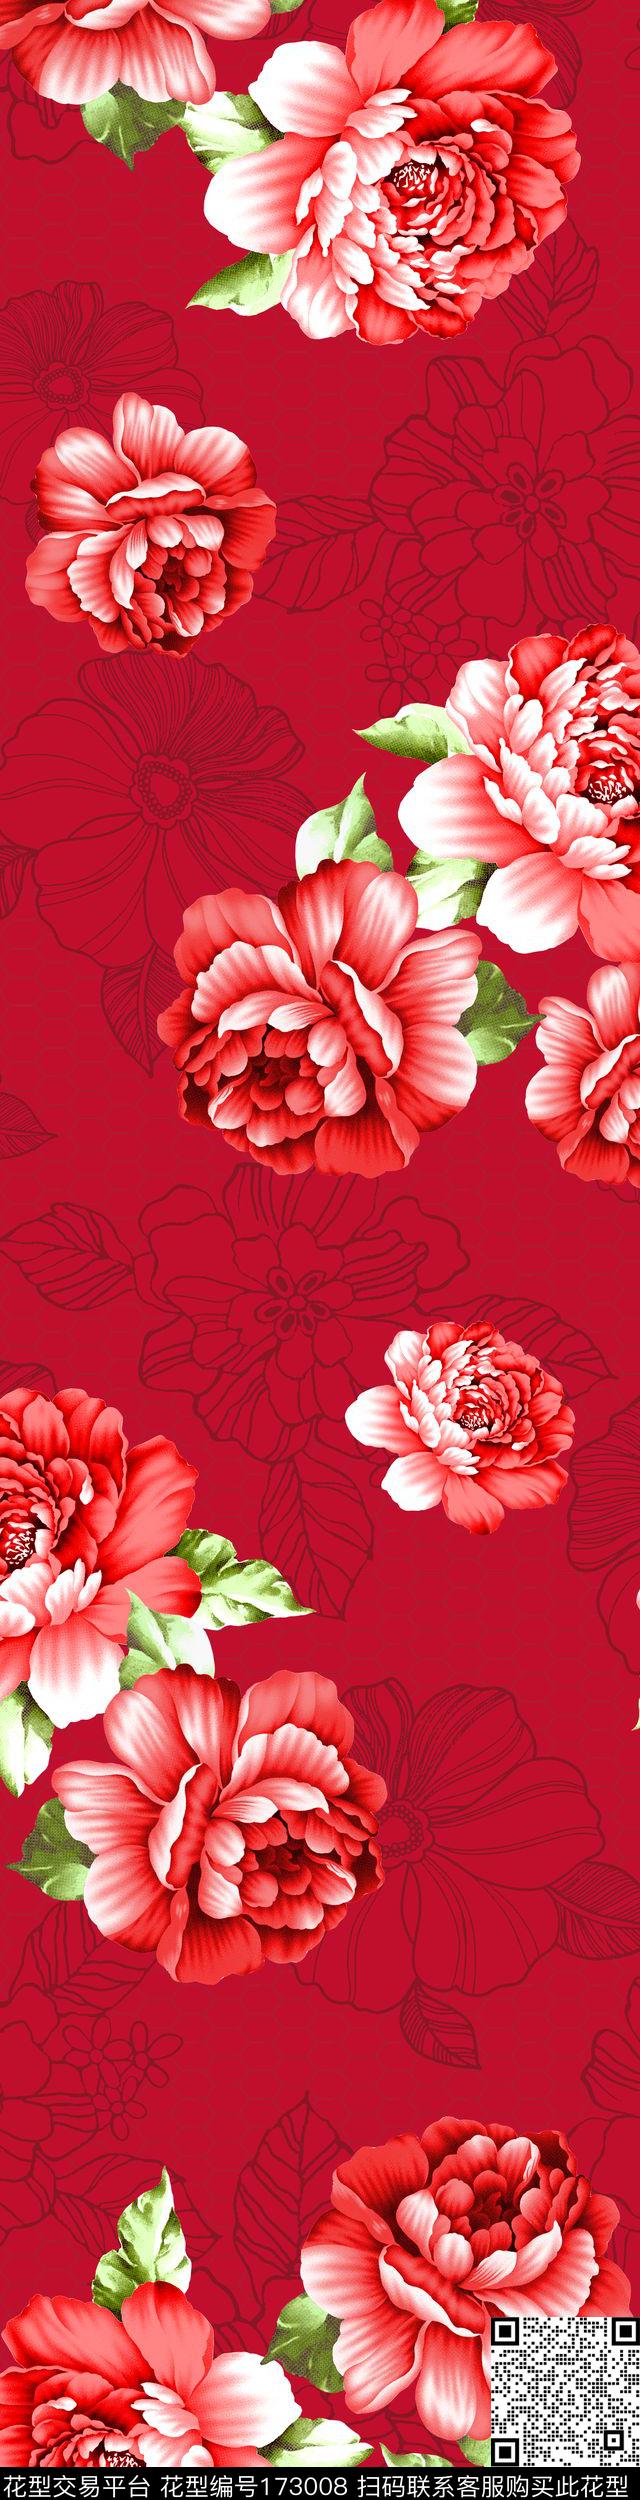 喜被 - 173008 - 结婚 婚庆 喜庆 - 传统印花花型 － 床品花型设计 － 瓦栏